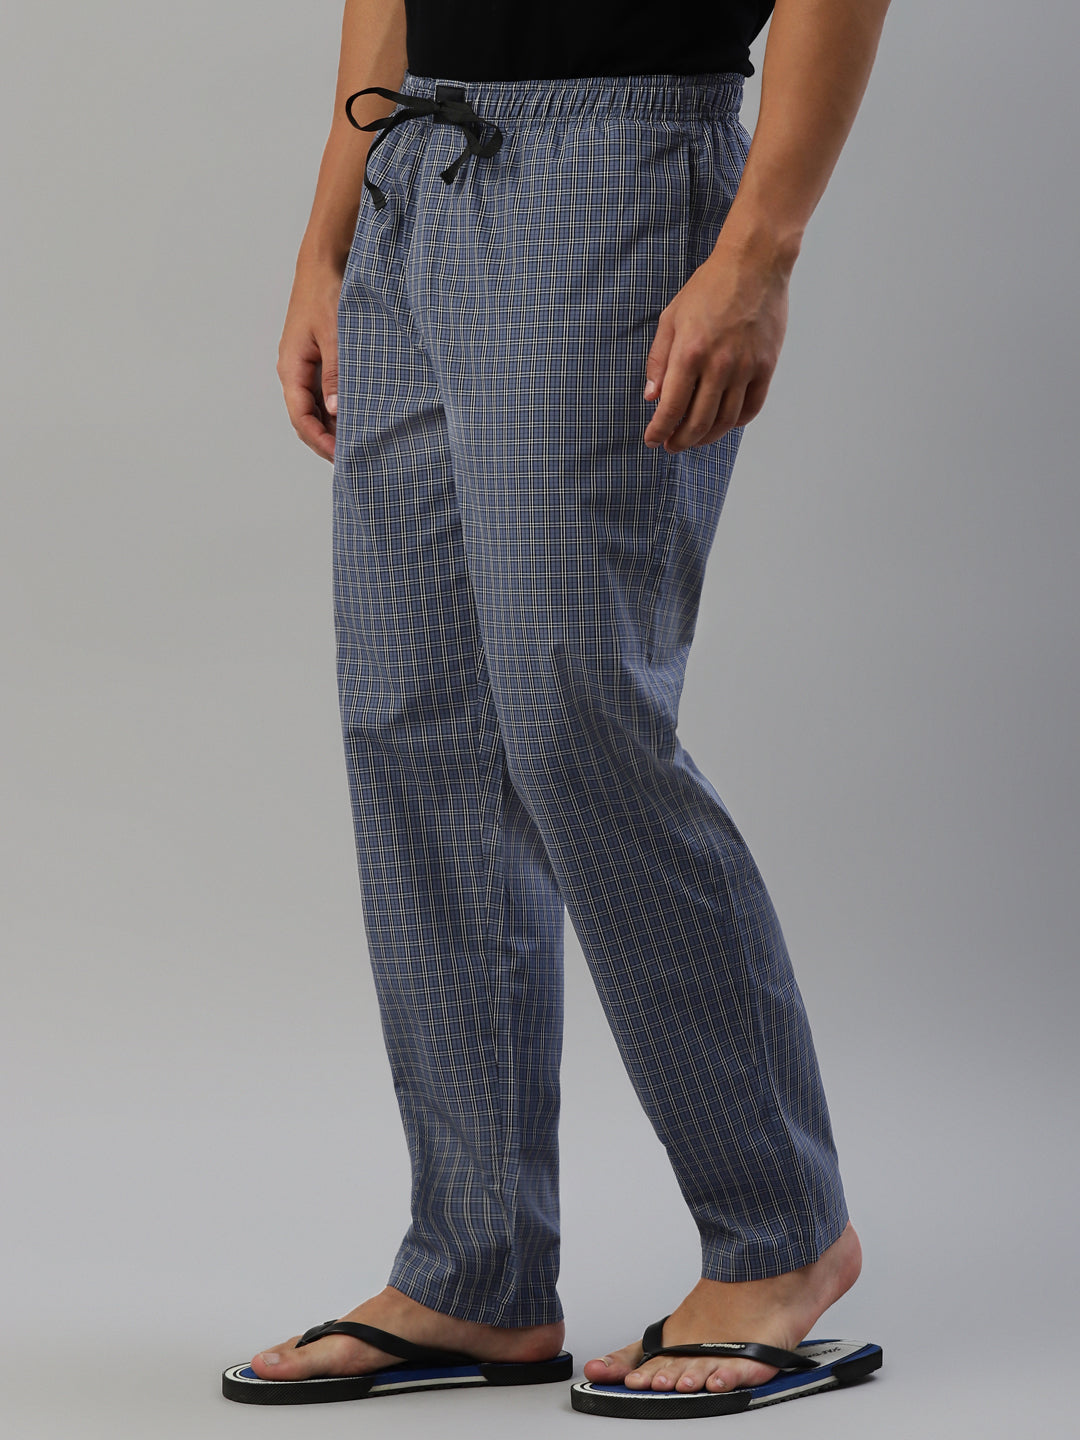 Don Vino Men's Checks Blue Cotton Blend Lounge Pants